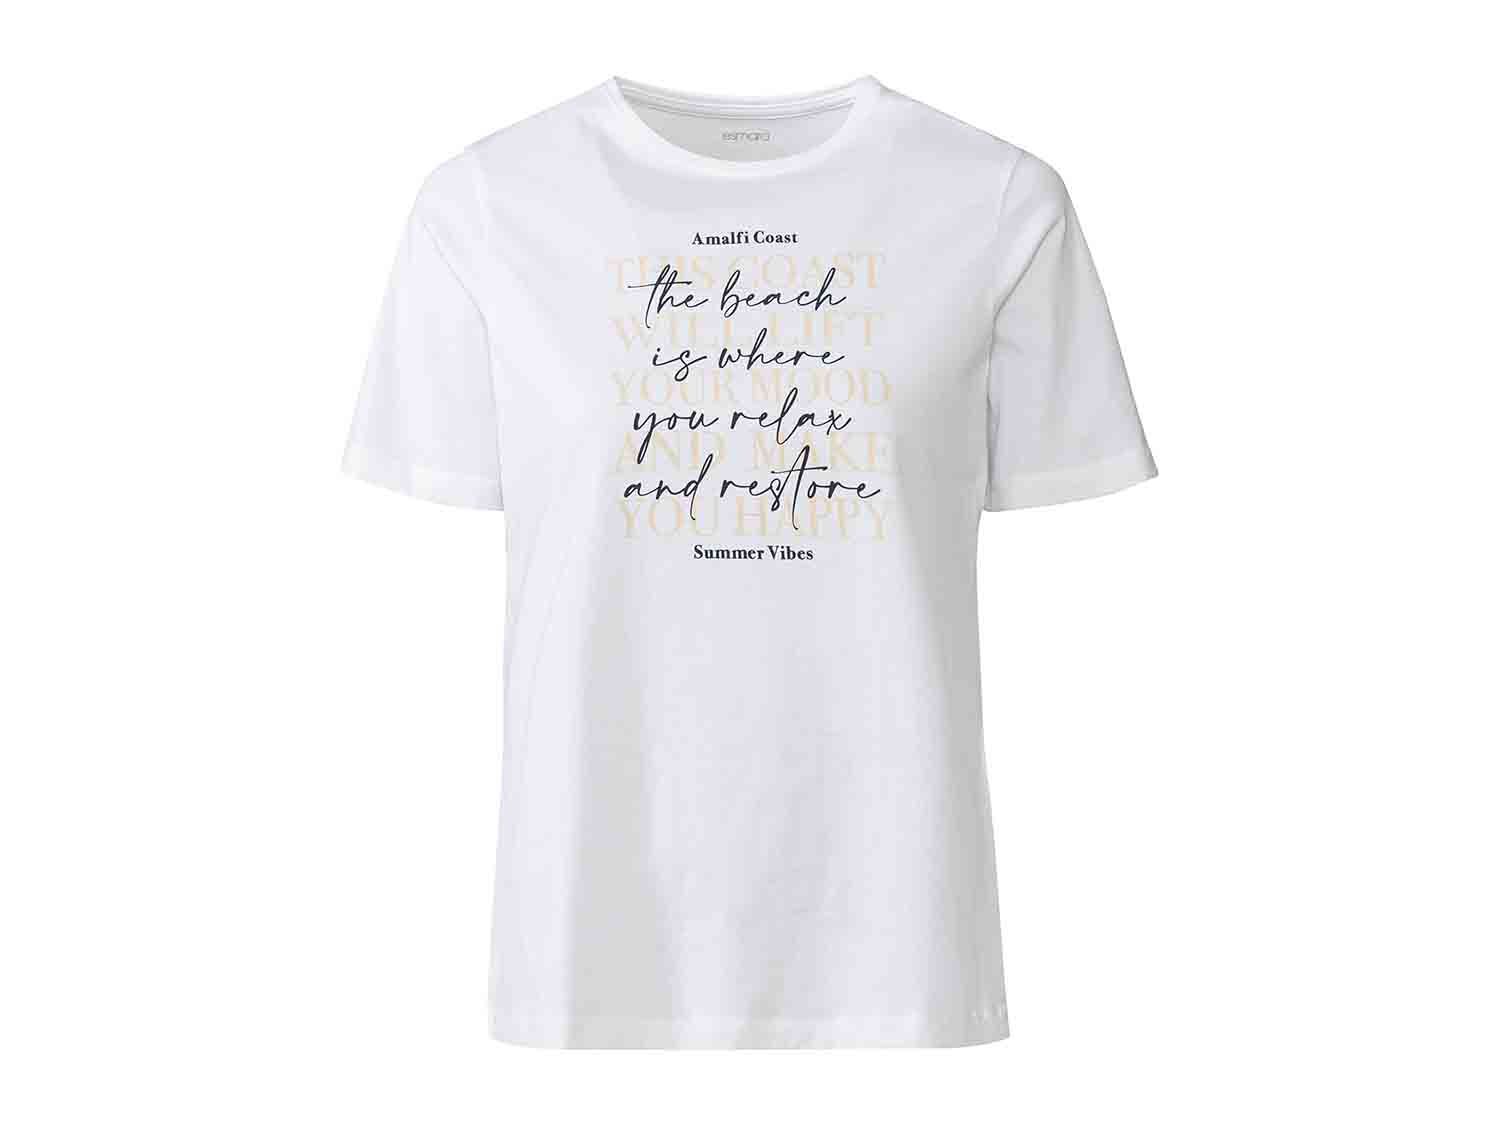 Camiseta de algodón puro para mujer